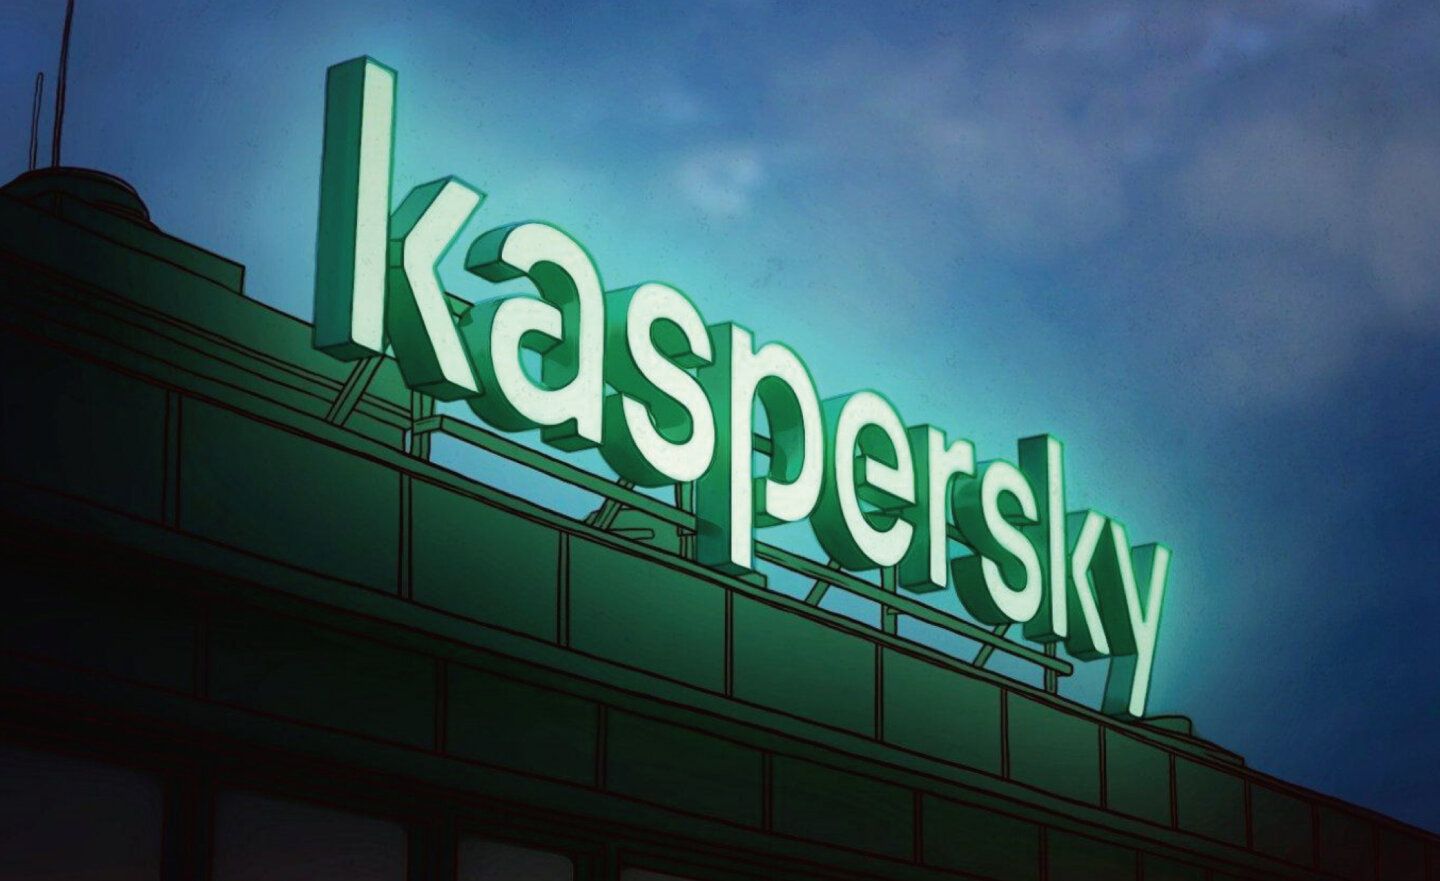 知名防毒軟體卡巴斯基 Kaspersky Lab 關閉美國分公司並將裁員 50 人